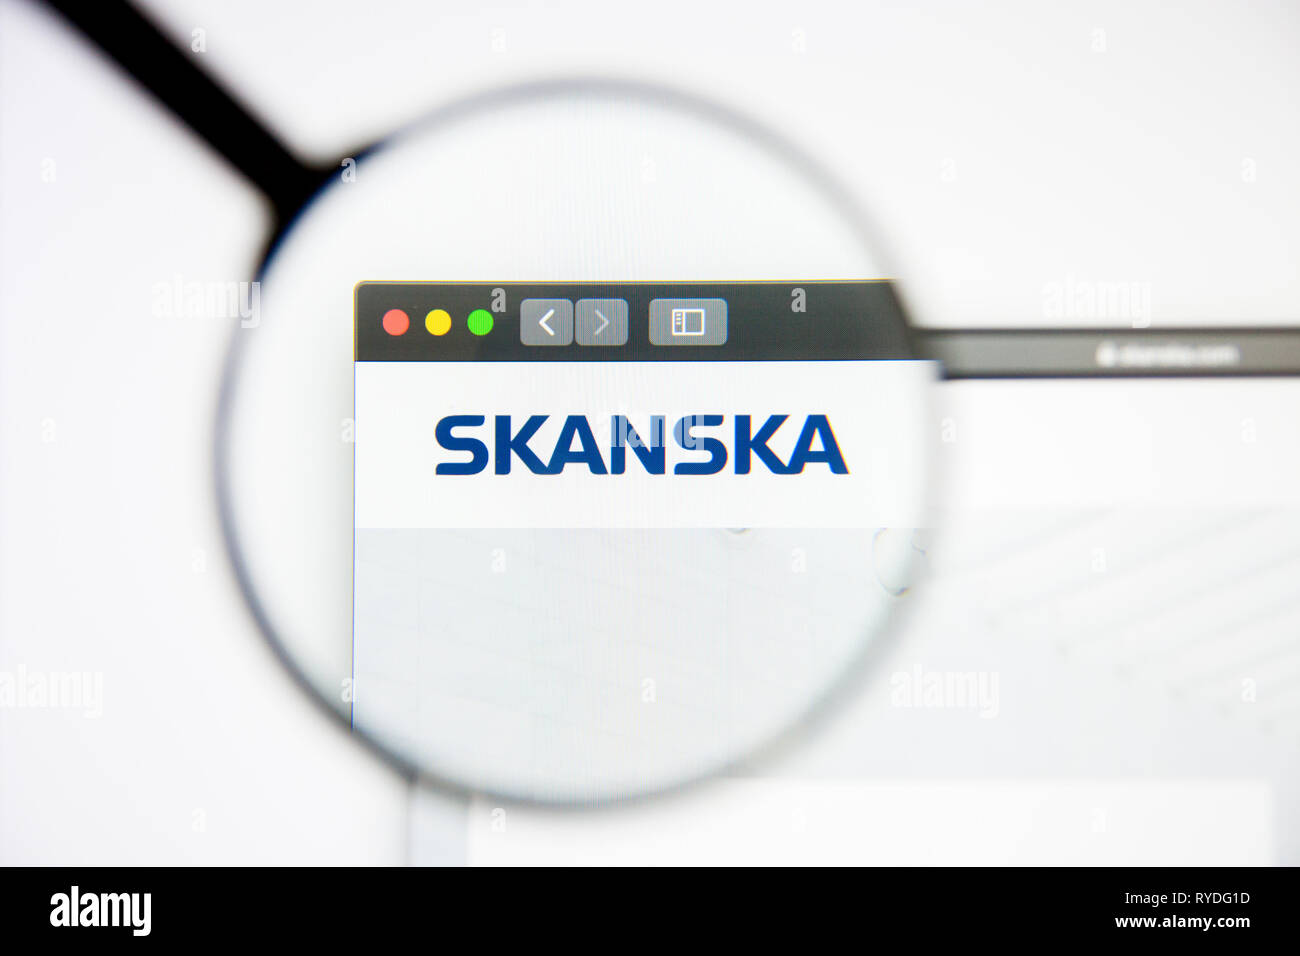 Los Angeles, California, Estados Unidos - 5 de marzo de 2019: Skanska Página de inicio de nuestro sitio web. Skanska logo visible en pantalla, Editorial ilustrativos Foto de stock